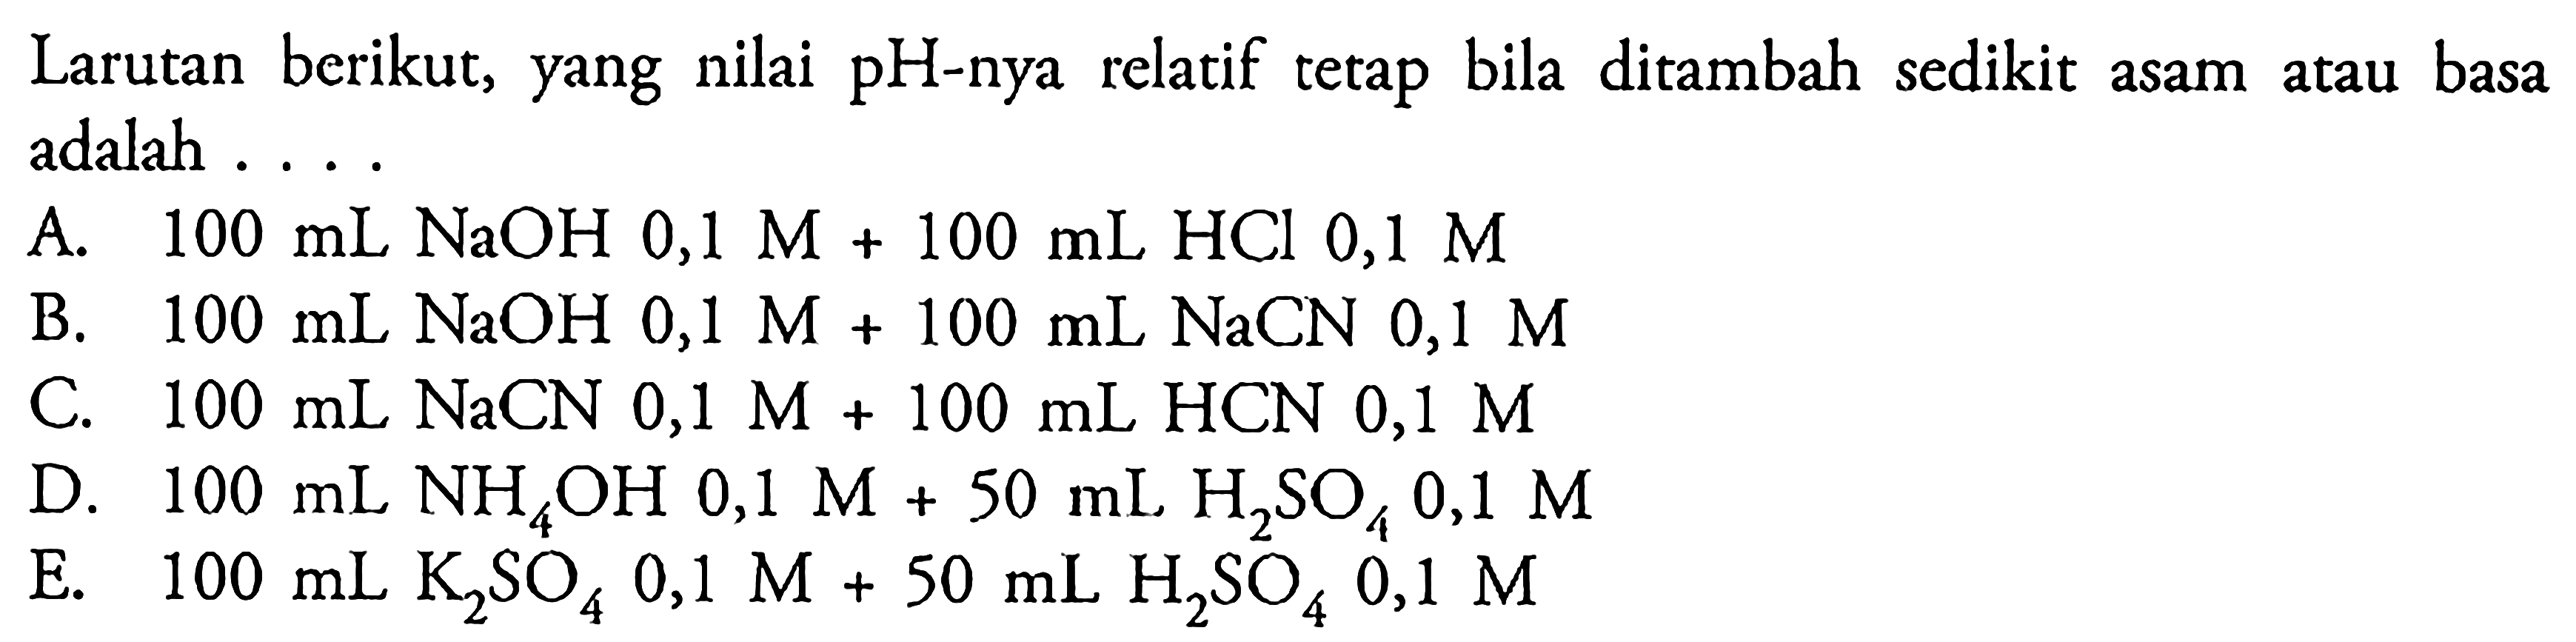 Larutan berikut, yang nilai pH-nya relatif tetap bila ditambah sedikit asam atau basa adalah ... A. 100 mL NaOH 0,1 M+100 mL HCl 0,1 M B. 100 mL NaOH 0,1 M+100 mL NaCN 0,1 M C. 100 mL NaCN 0,1 M+100 mL HCN 0,1 M D. 100 mL NH4OH 0,1 M+50 mL H2SO4 0,1 M E. 100 mL K2SO4 0,1 M+50 mL H2SO4 0,1 M 